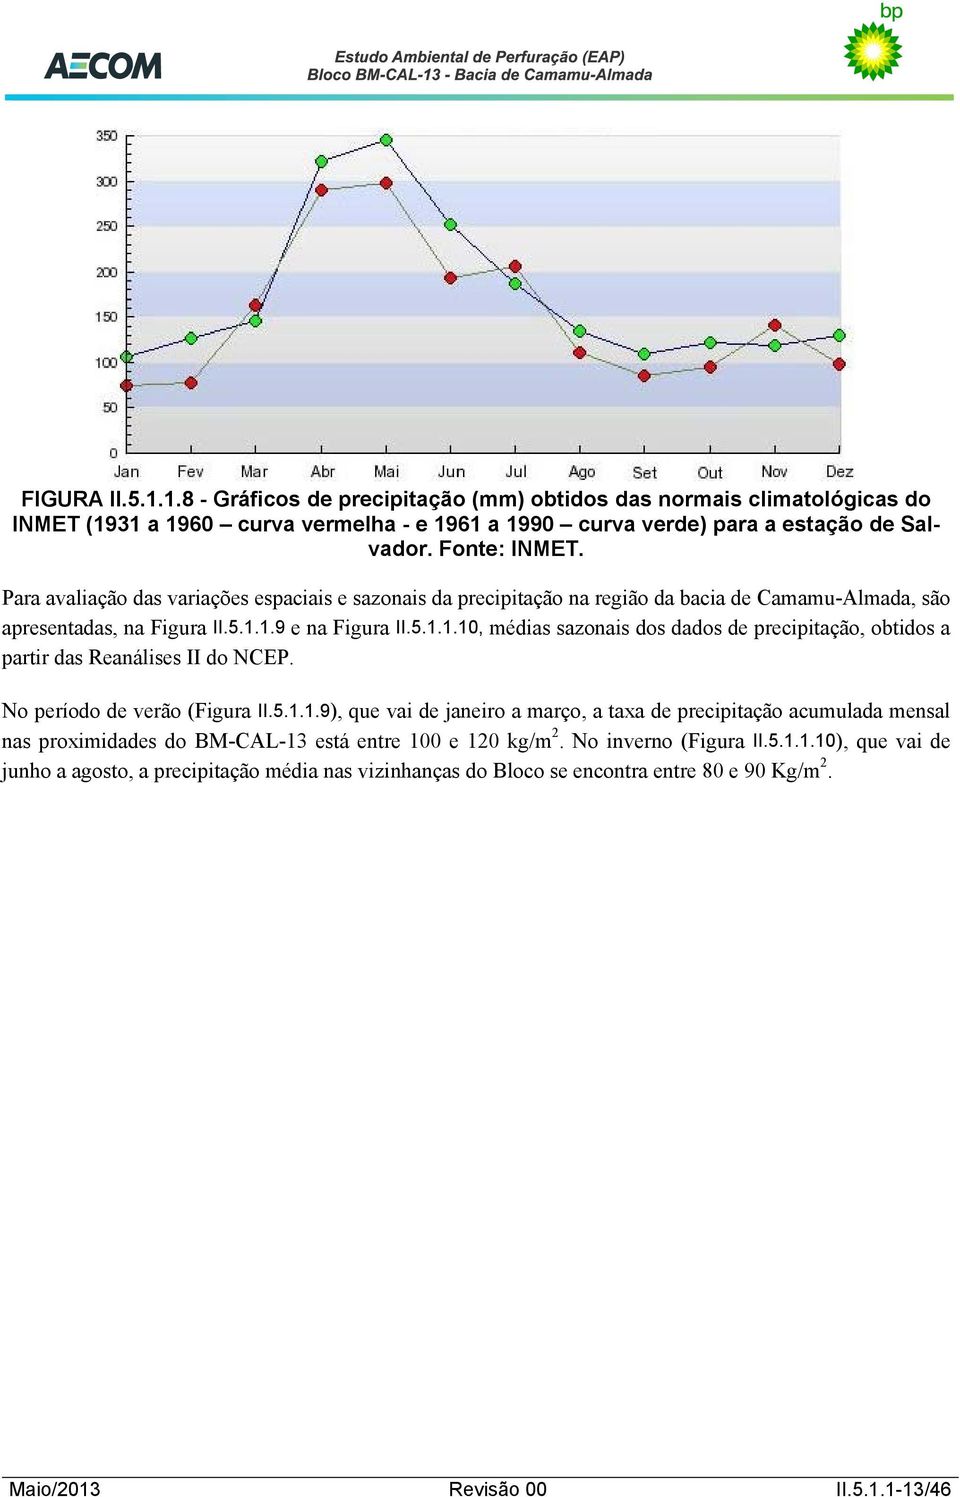 1.9 e na Figura II.5.1.1.10, médias sazonais dos dados de precipitação, obtidos a partir das Reanálises II do NCEP. No período de verão (Figura II.5.1.1.9), que vai de janeiro a março, a taxa de precipitação acumulada mensal nas proximidades do BM-CAL-13 está entre 100 e 120 kg/m 2.